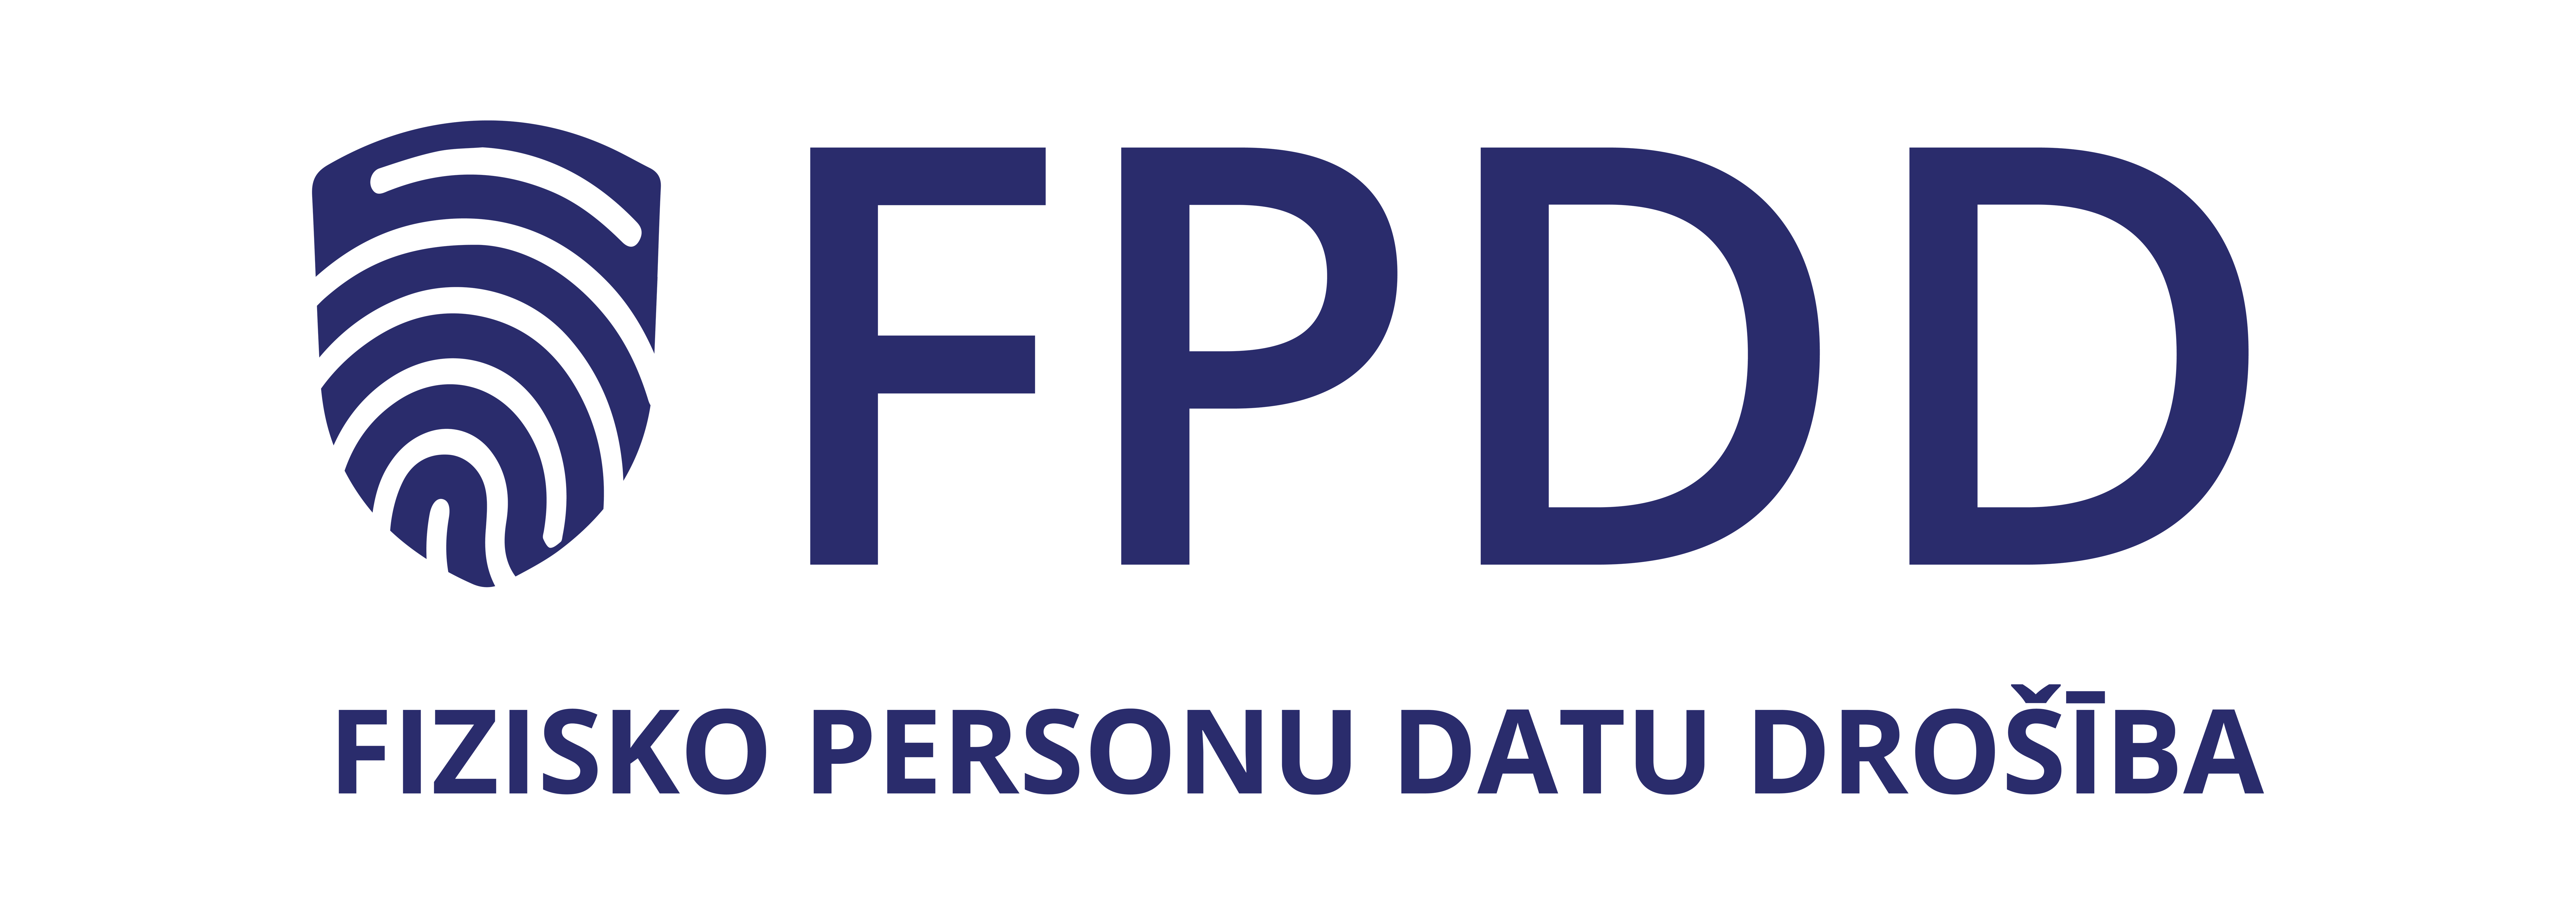 FPDD | Fizisko Personu Datu Drošība - Par Mums